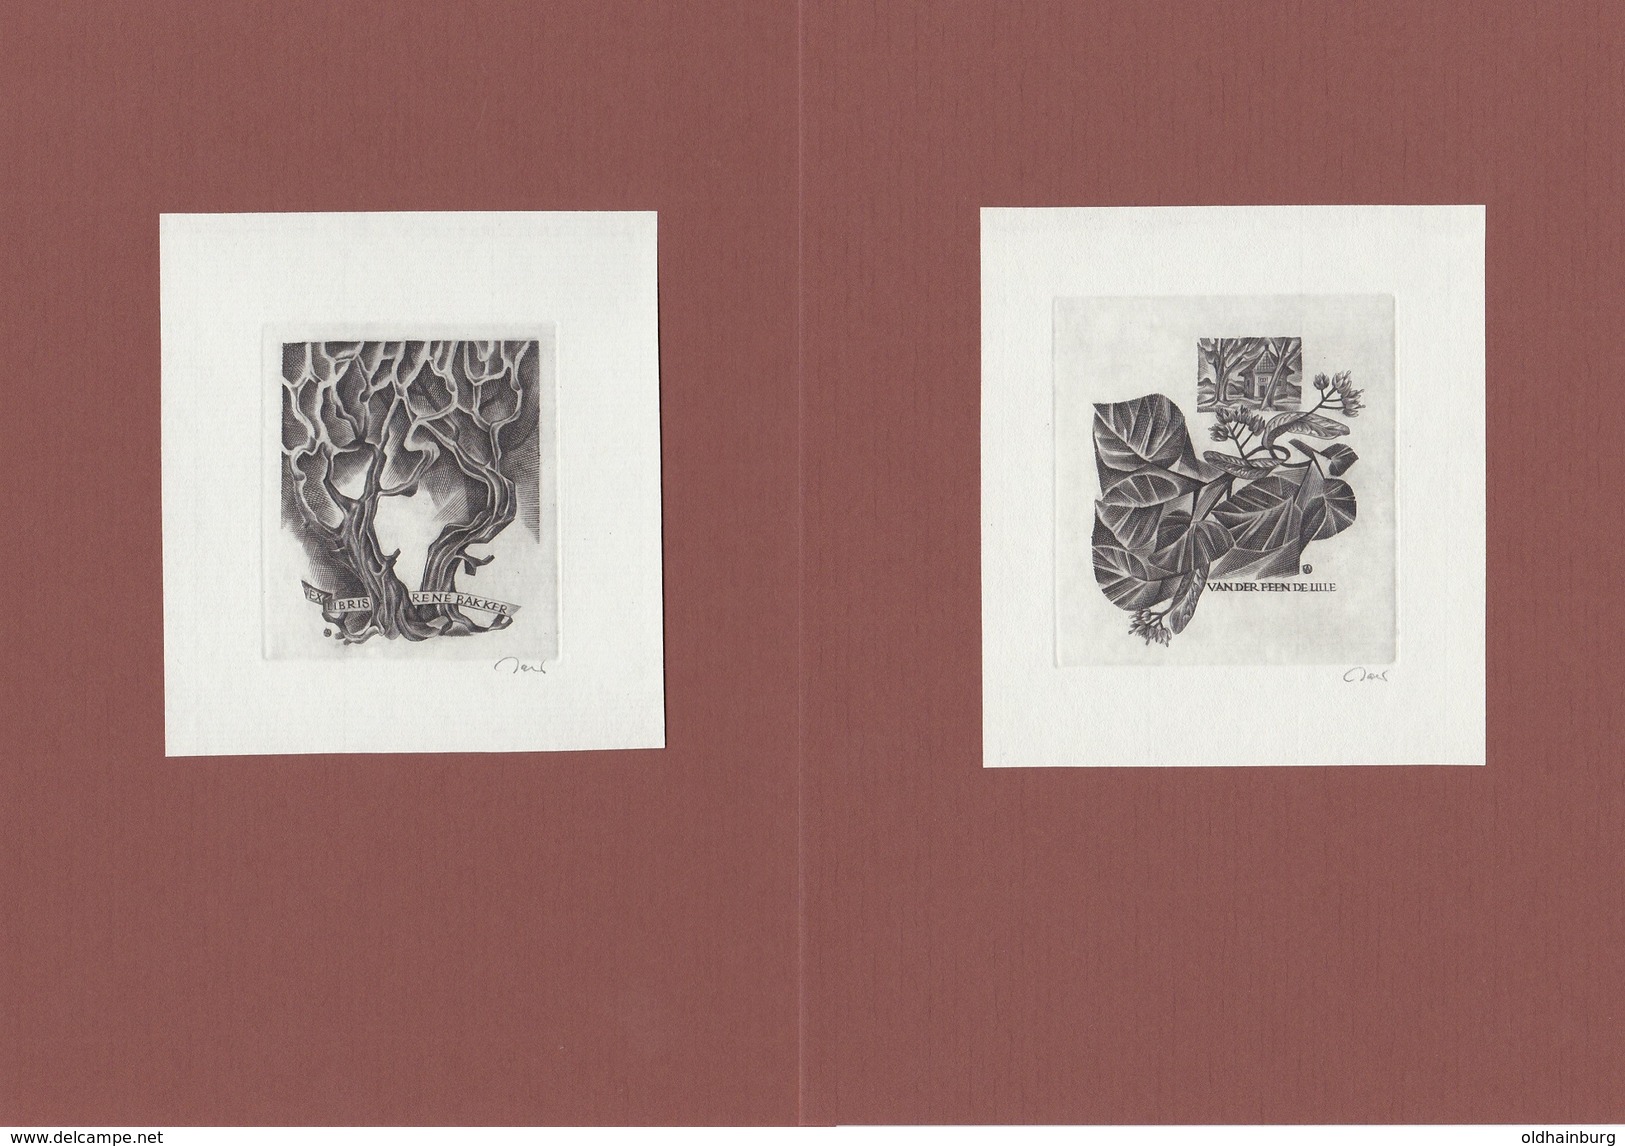 4076-el: Sammlung alter ExLibris- Blätter, Gesamt 20 Blätter je Format A5, Jahrgang ca. 1930